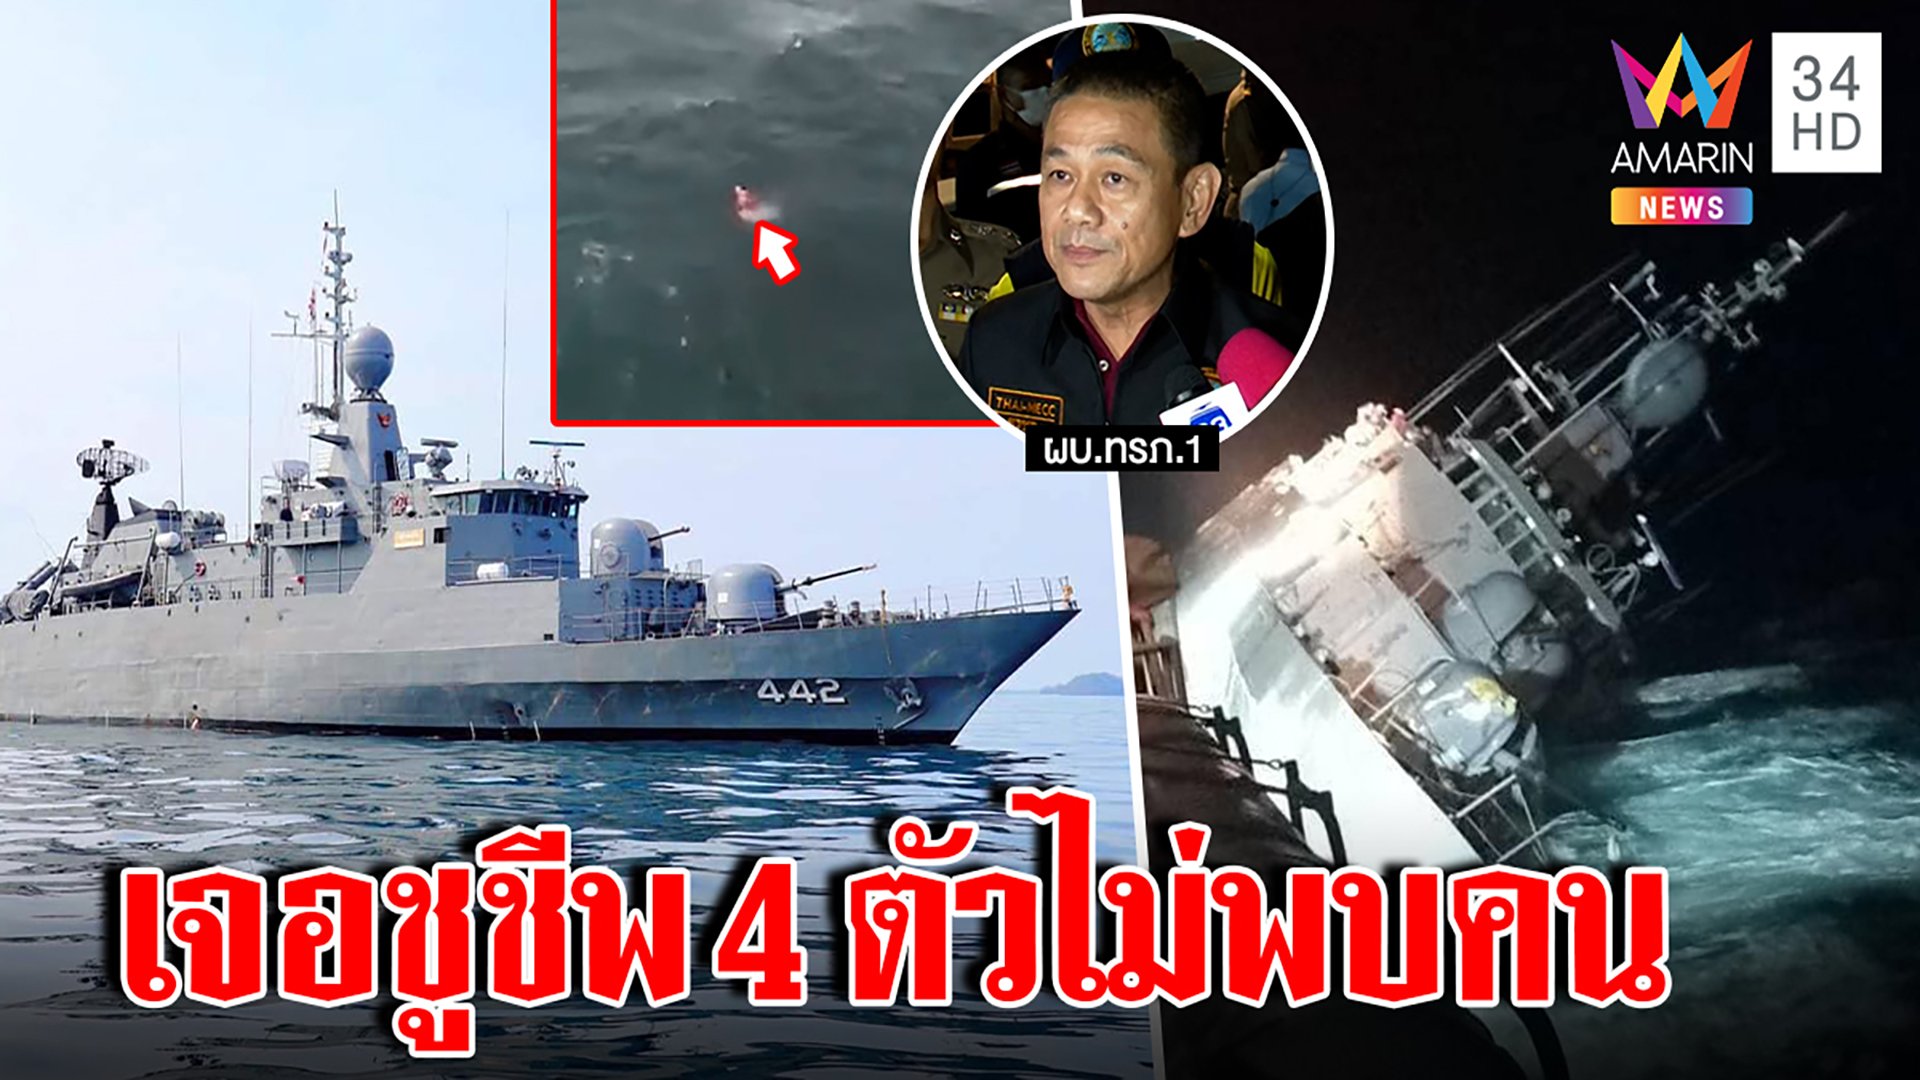 ยังไม่สิ้นหวัง!ทัพเรือเจอชูชีพ4ตัวลอยทะเล มั่นใจเรือสุโขทัยล่มอีก30คนน่าจะค้นพบ | ทุบโต๊ะข่าว | 19 ธ.ค. 65 | AMARIN TVHD34